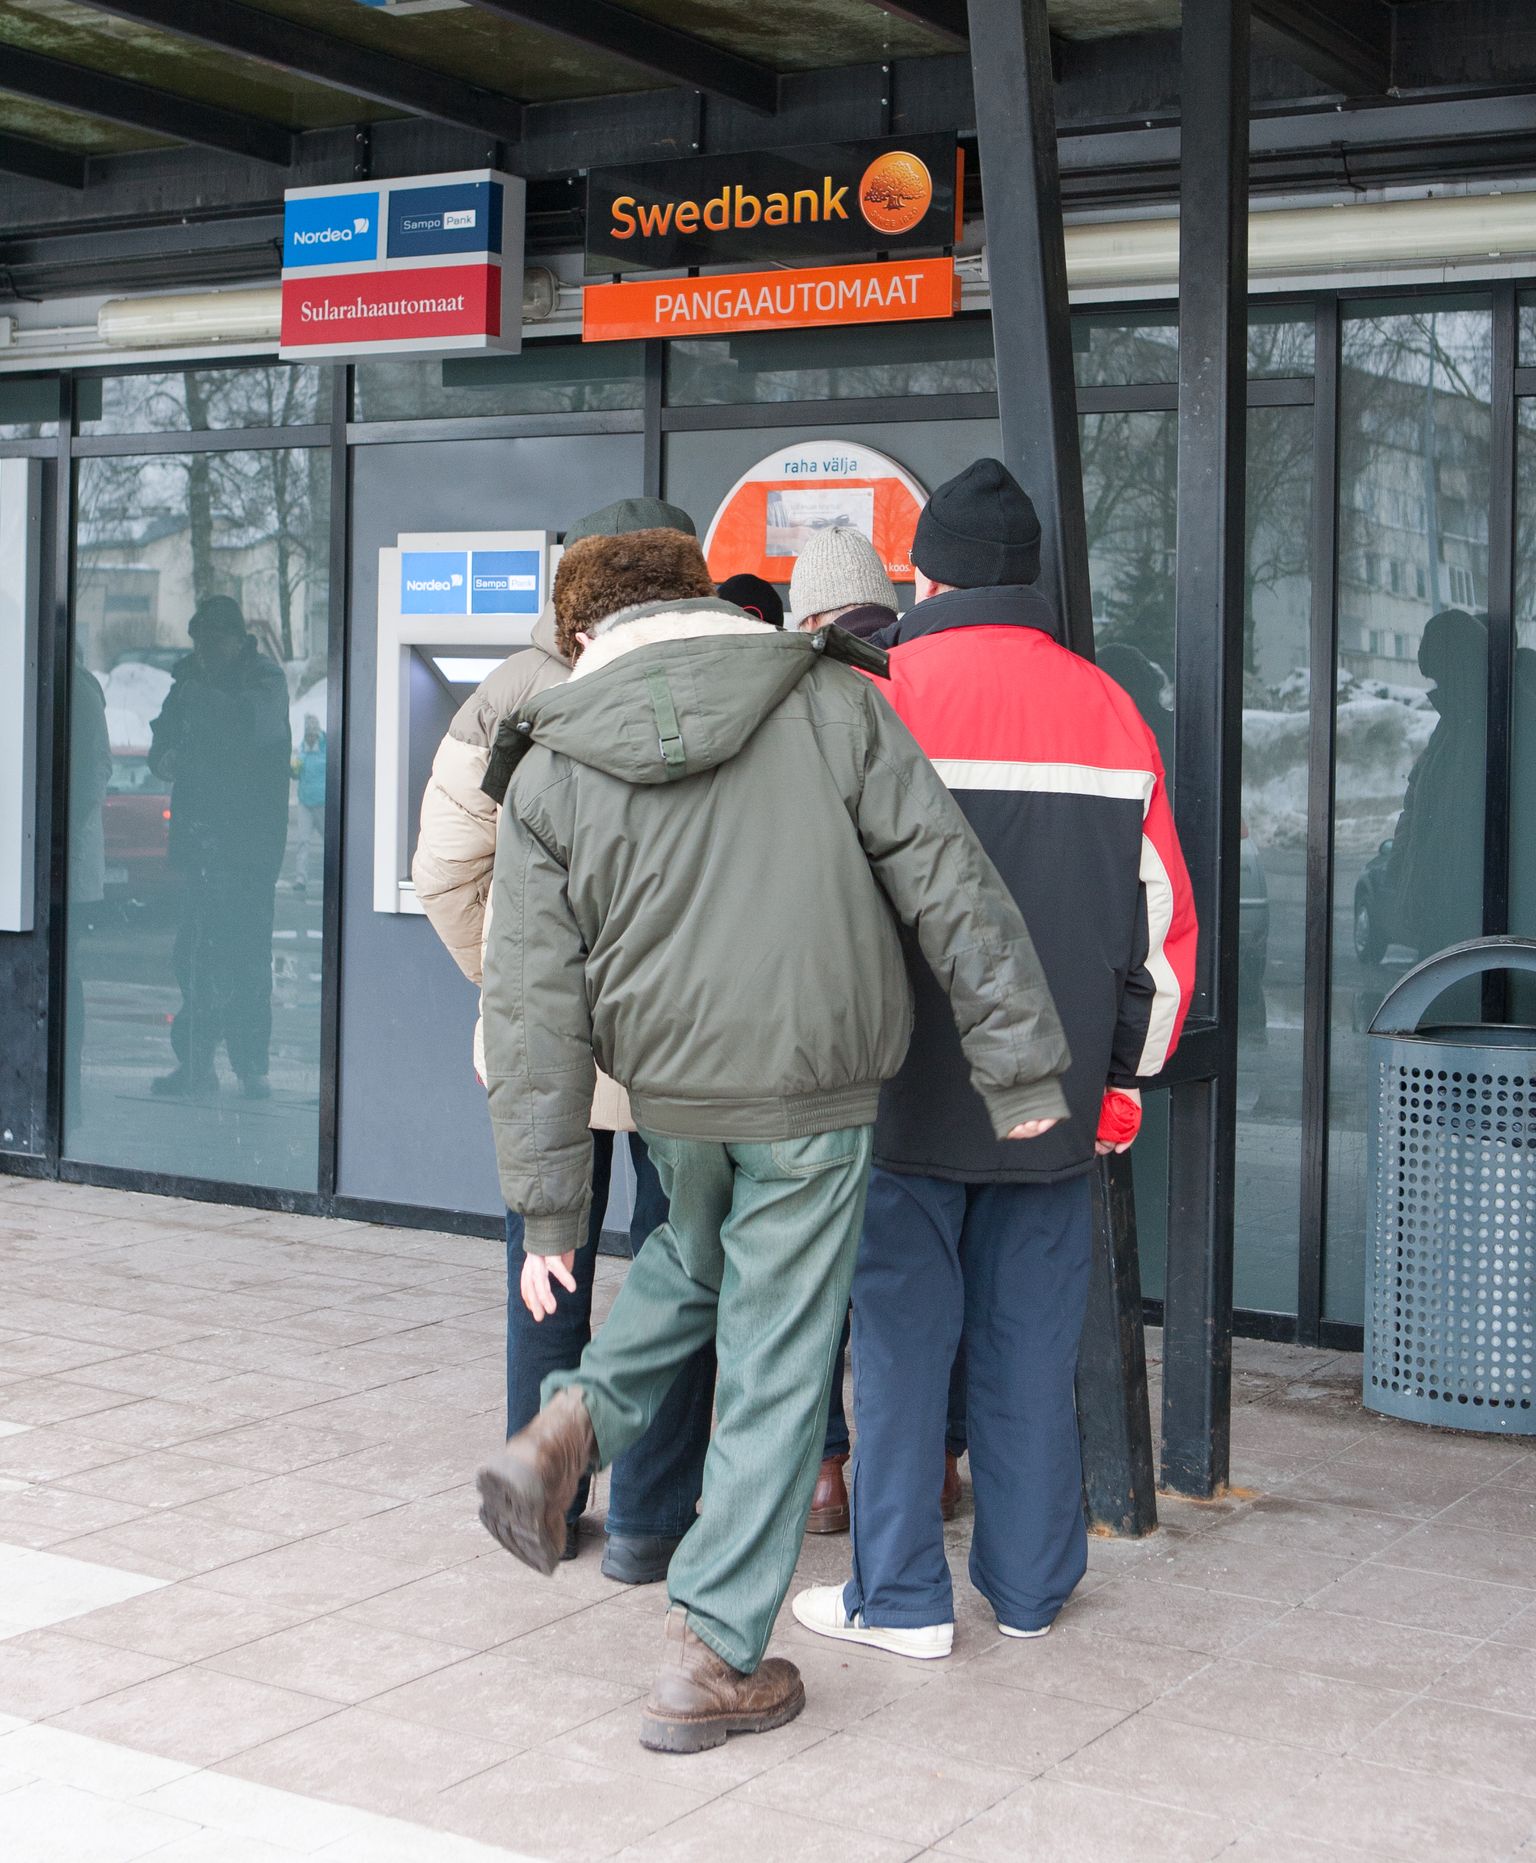 Pensionipäeval on enamasti pangaautomaadi juures suurem hulk inimesi kui tavaliselt.